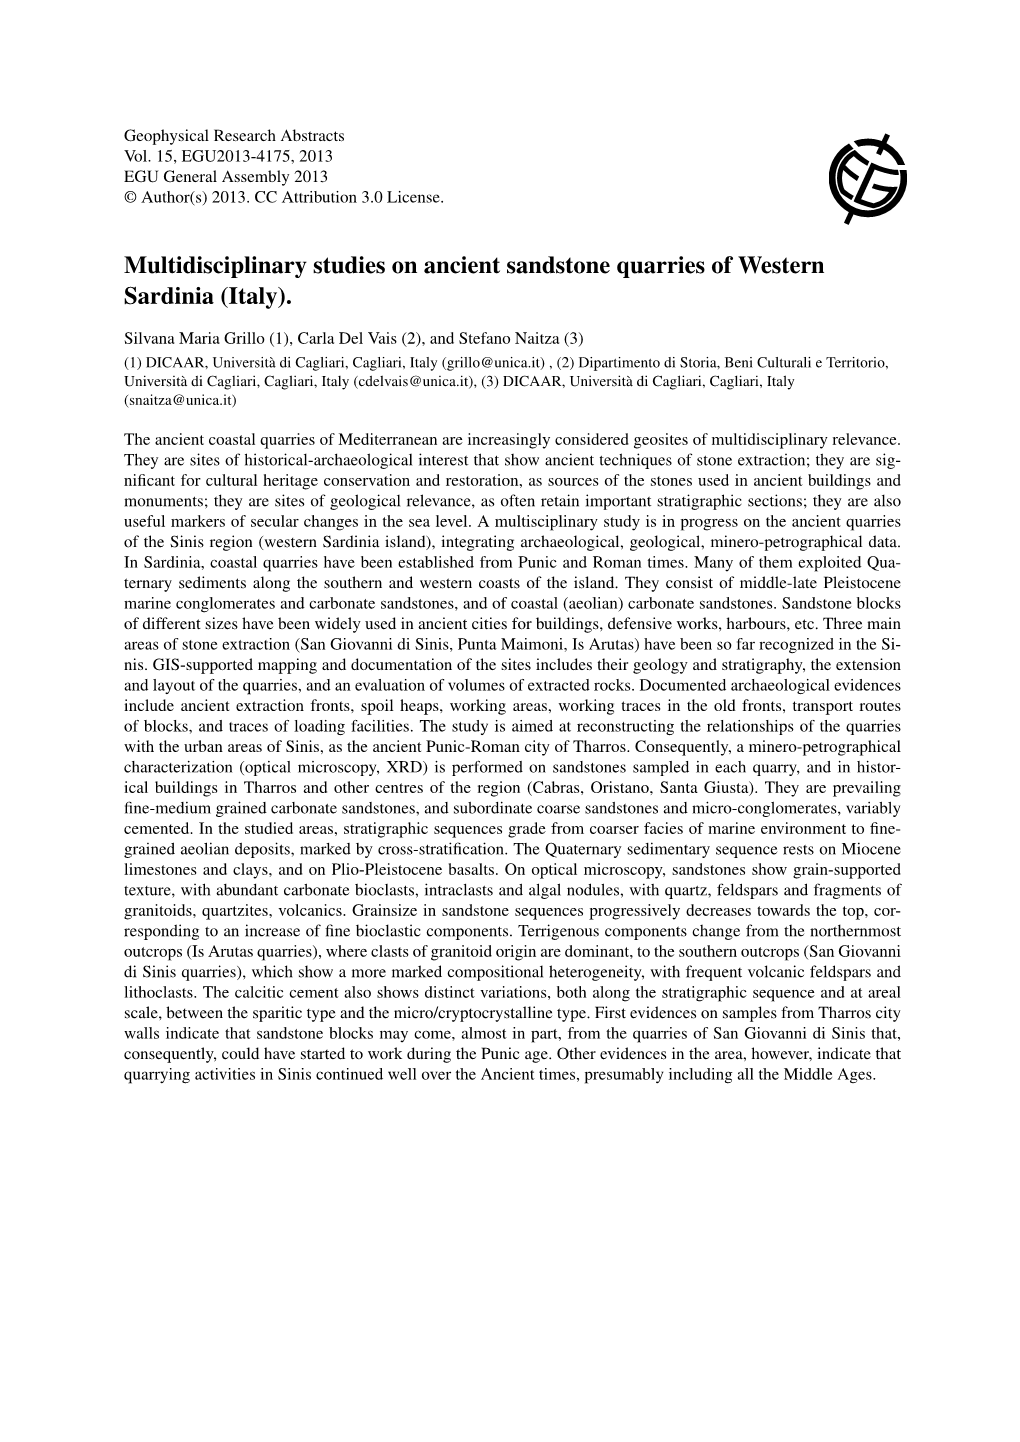 Multidisciplinary Studies on Ancient Sandstone Quarries of Western Sardinia (Italy)